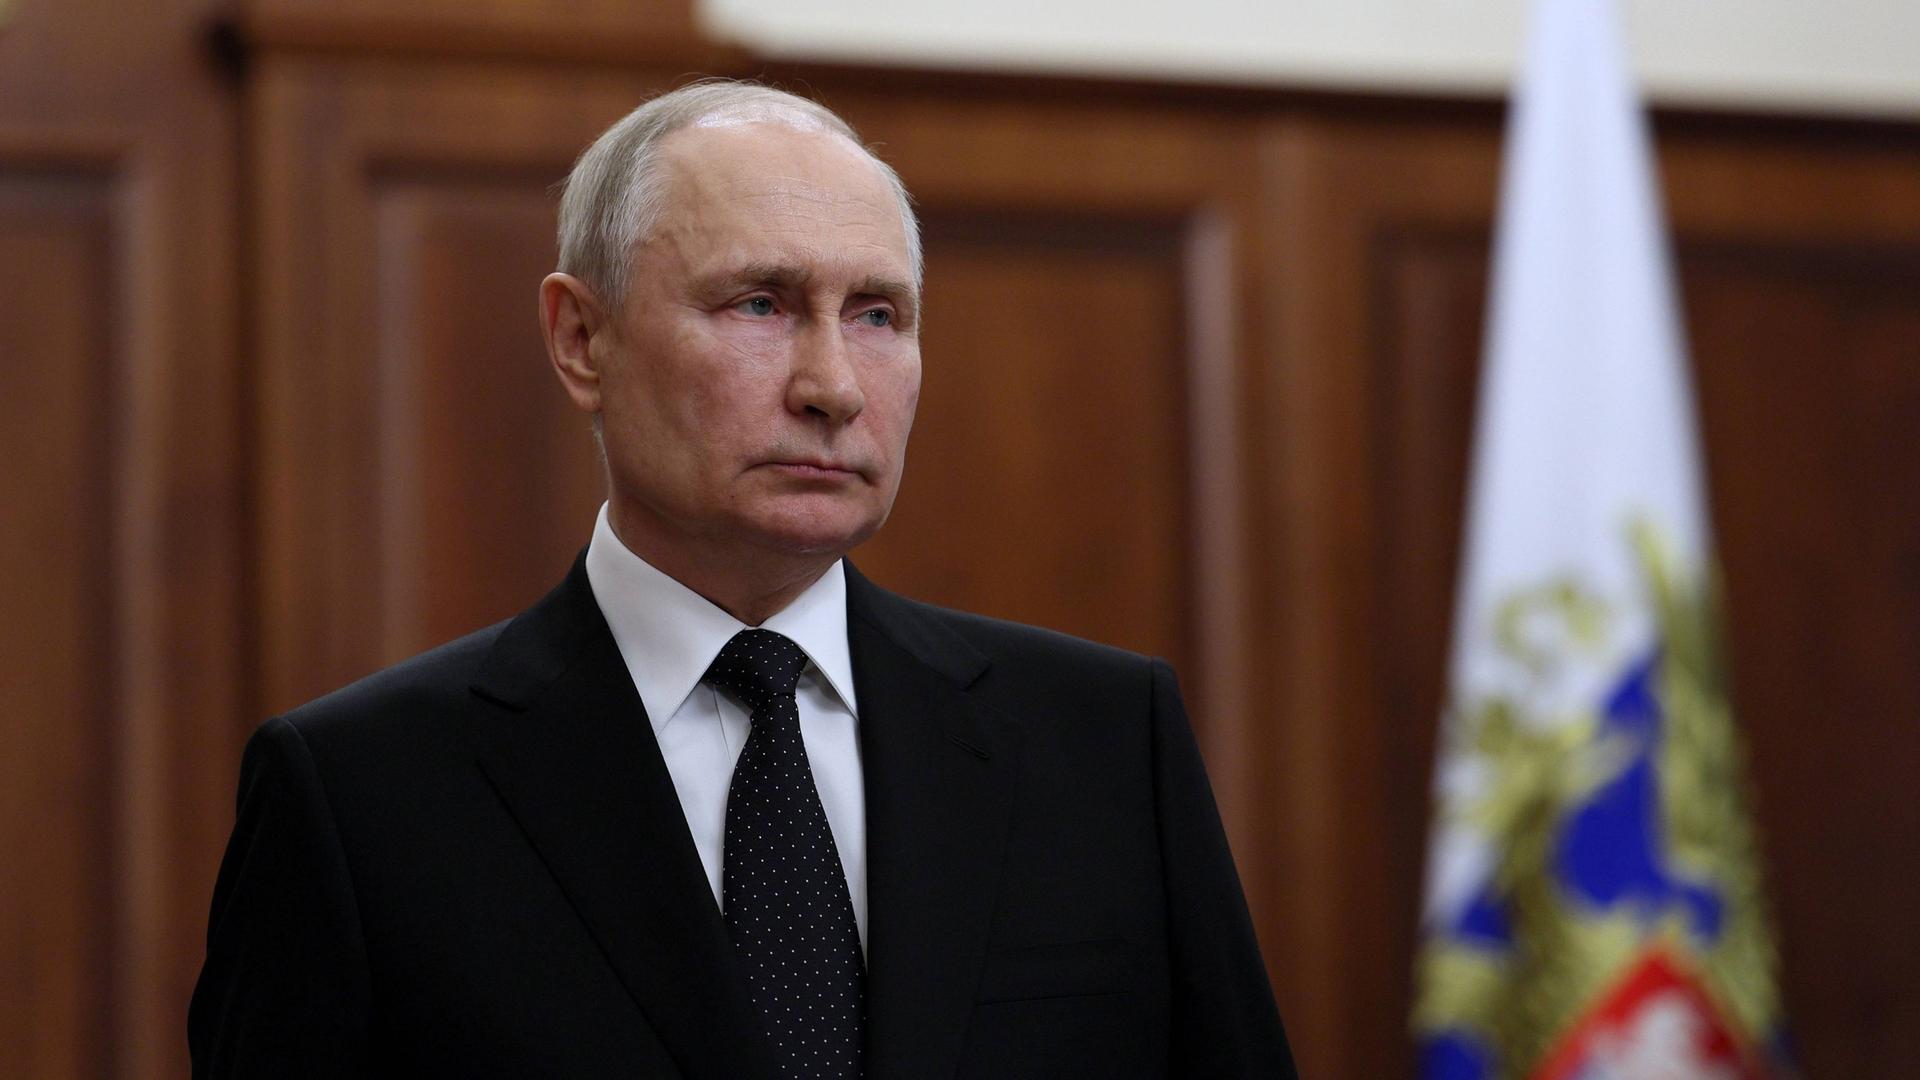 Wladimir Putin steht mit ernstem Blick in einem politisch repräsentativen Raum.